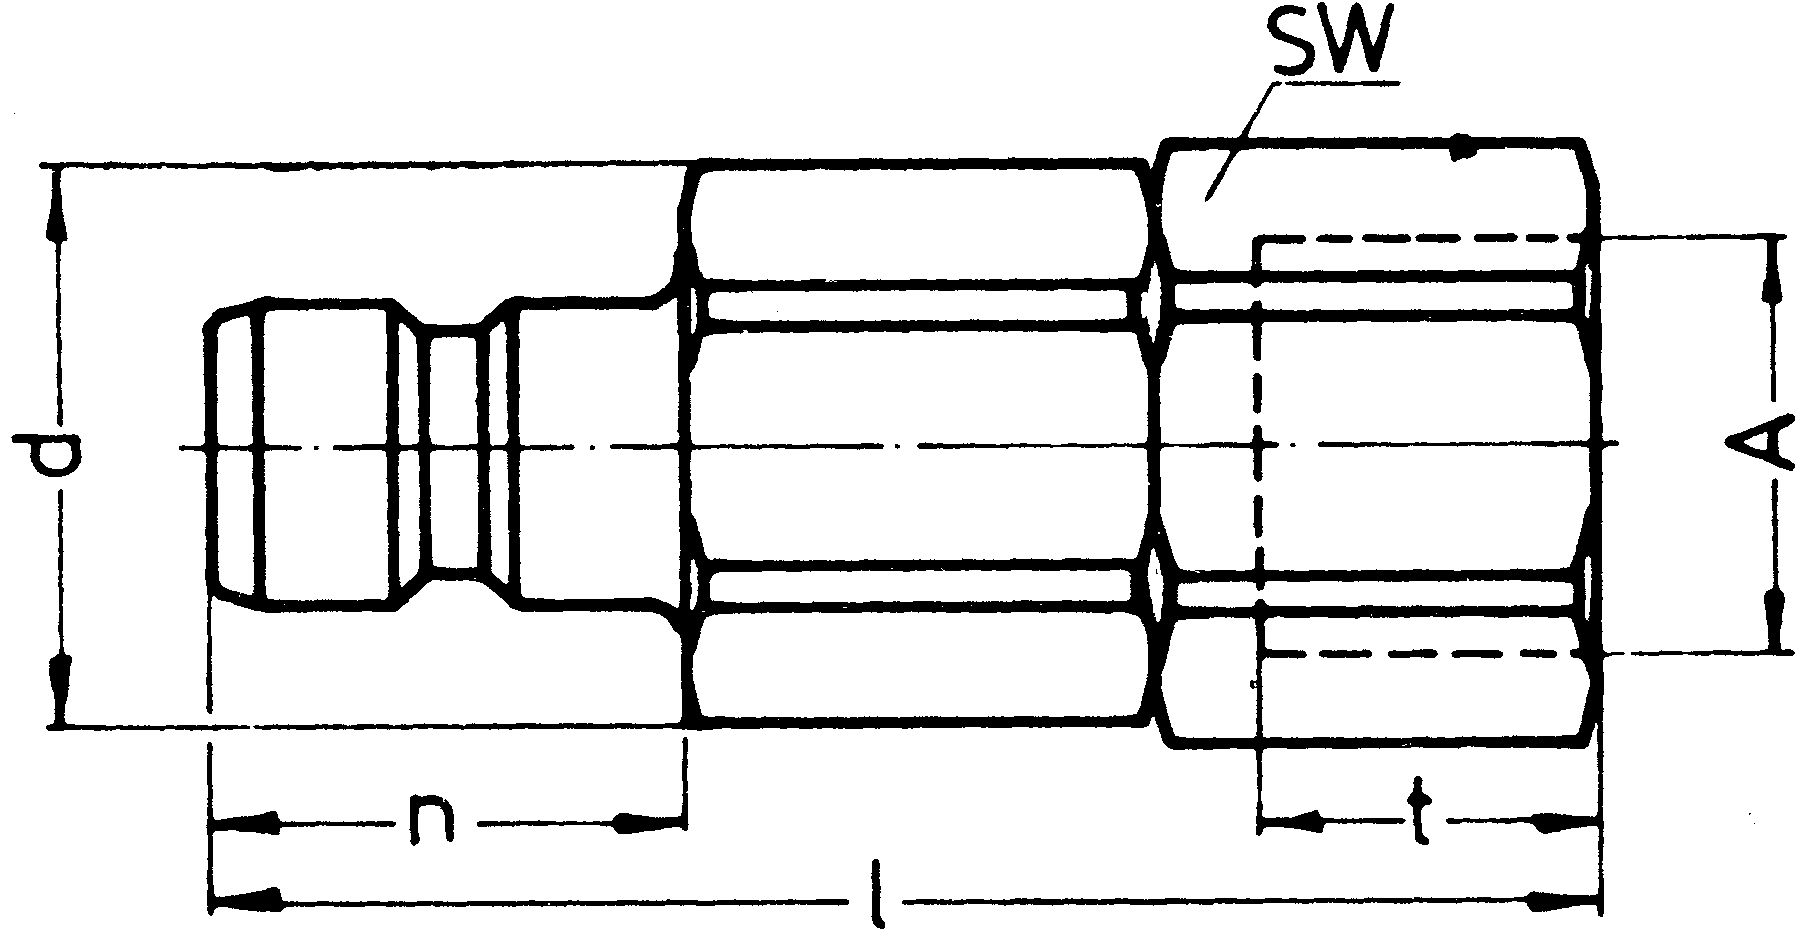 SP-009-2-WR521-21-2-Z02-GW-EB